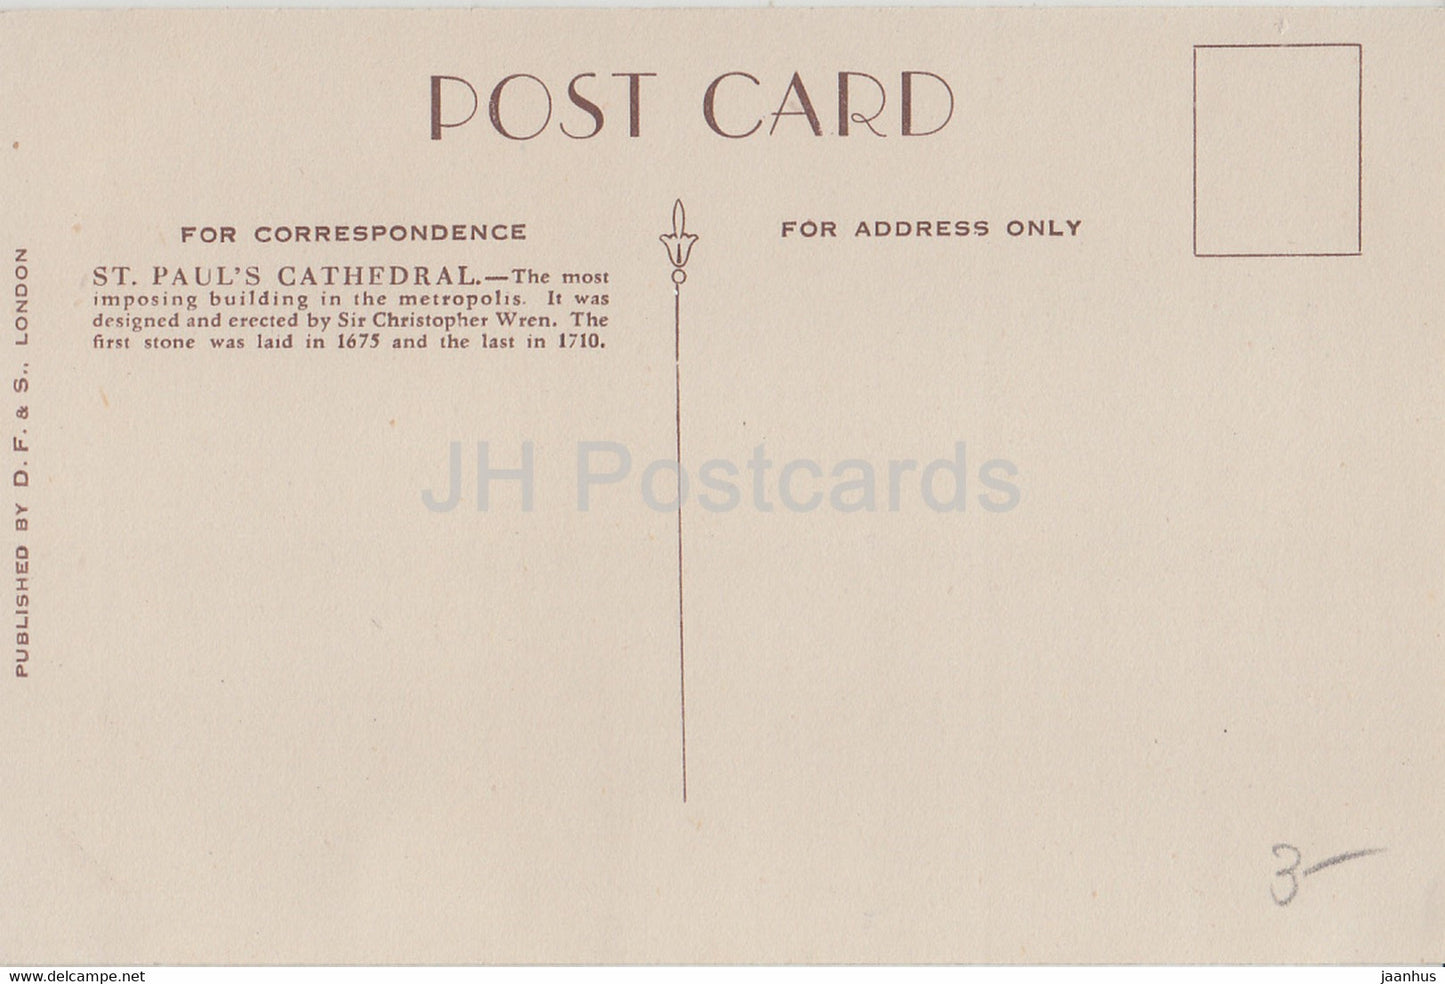 Londres - Cathédrale St Paul - carte postale ancienne - Angleterre - Royaume-Uni - inutilisée